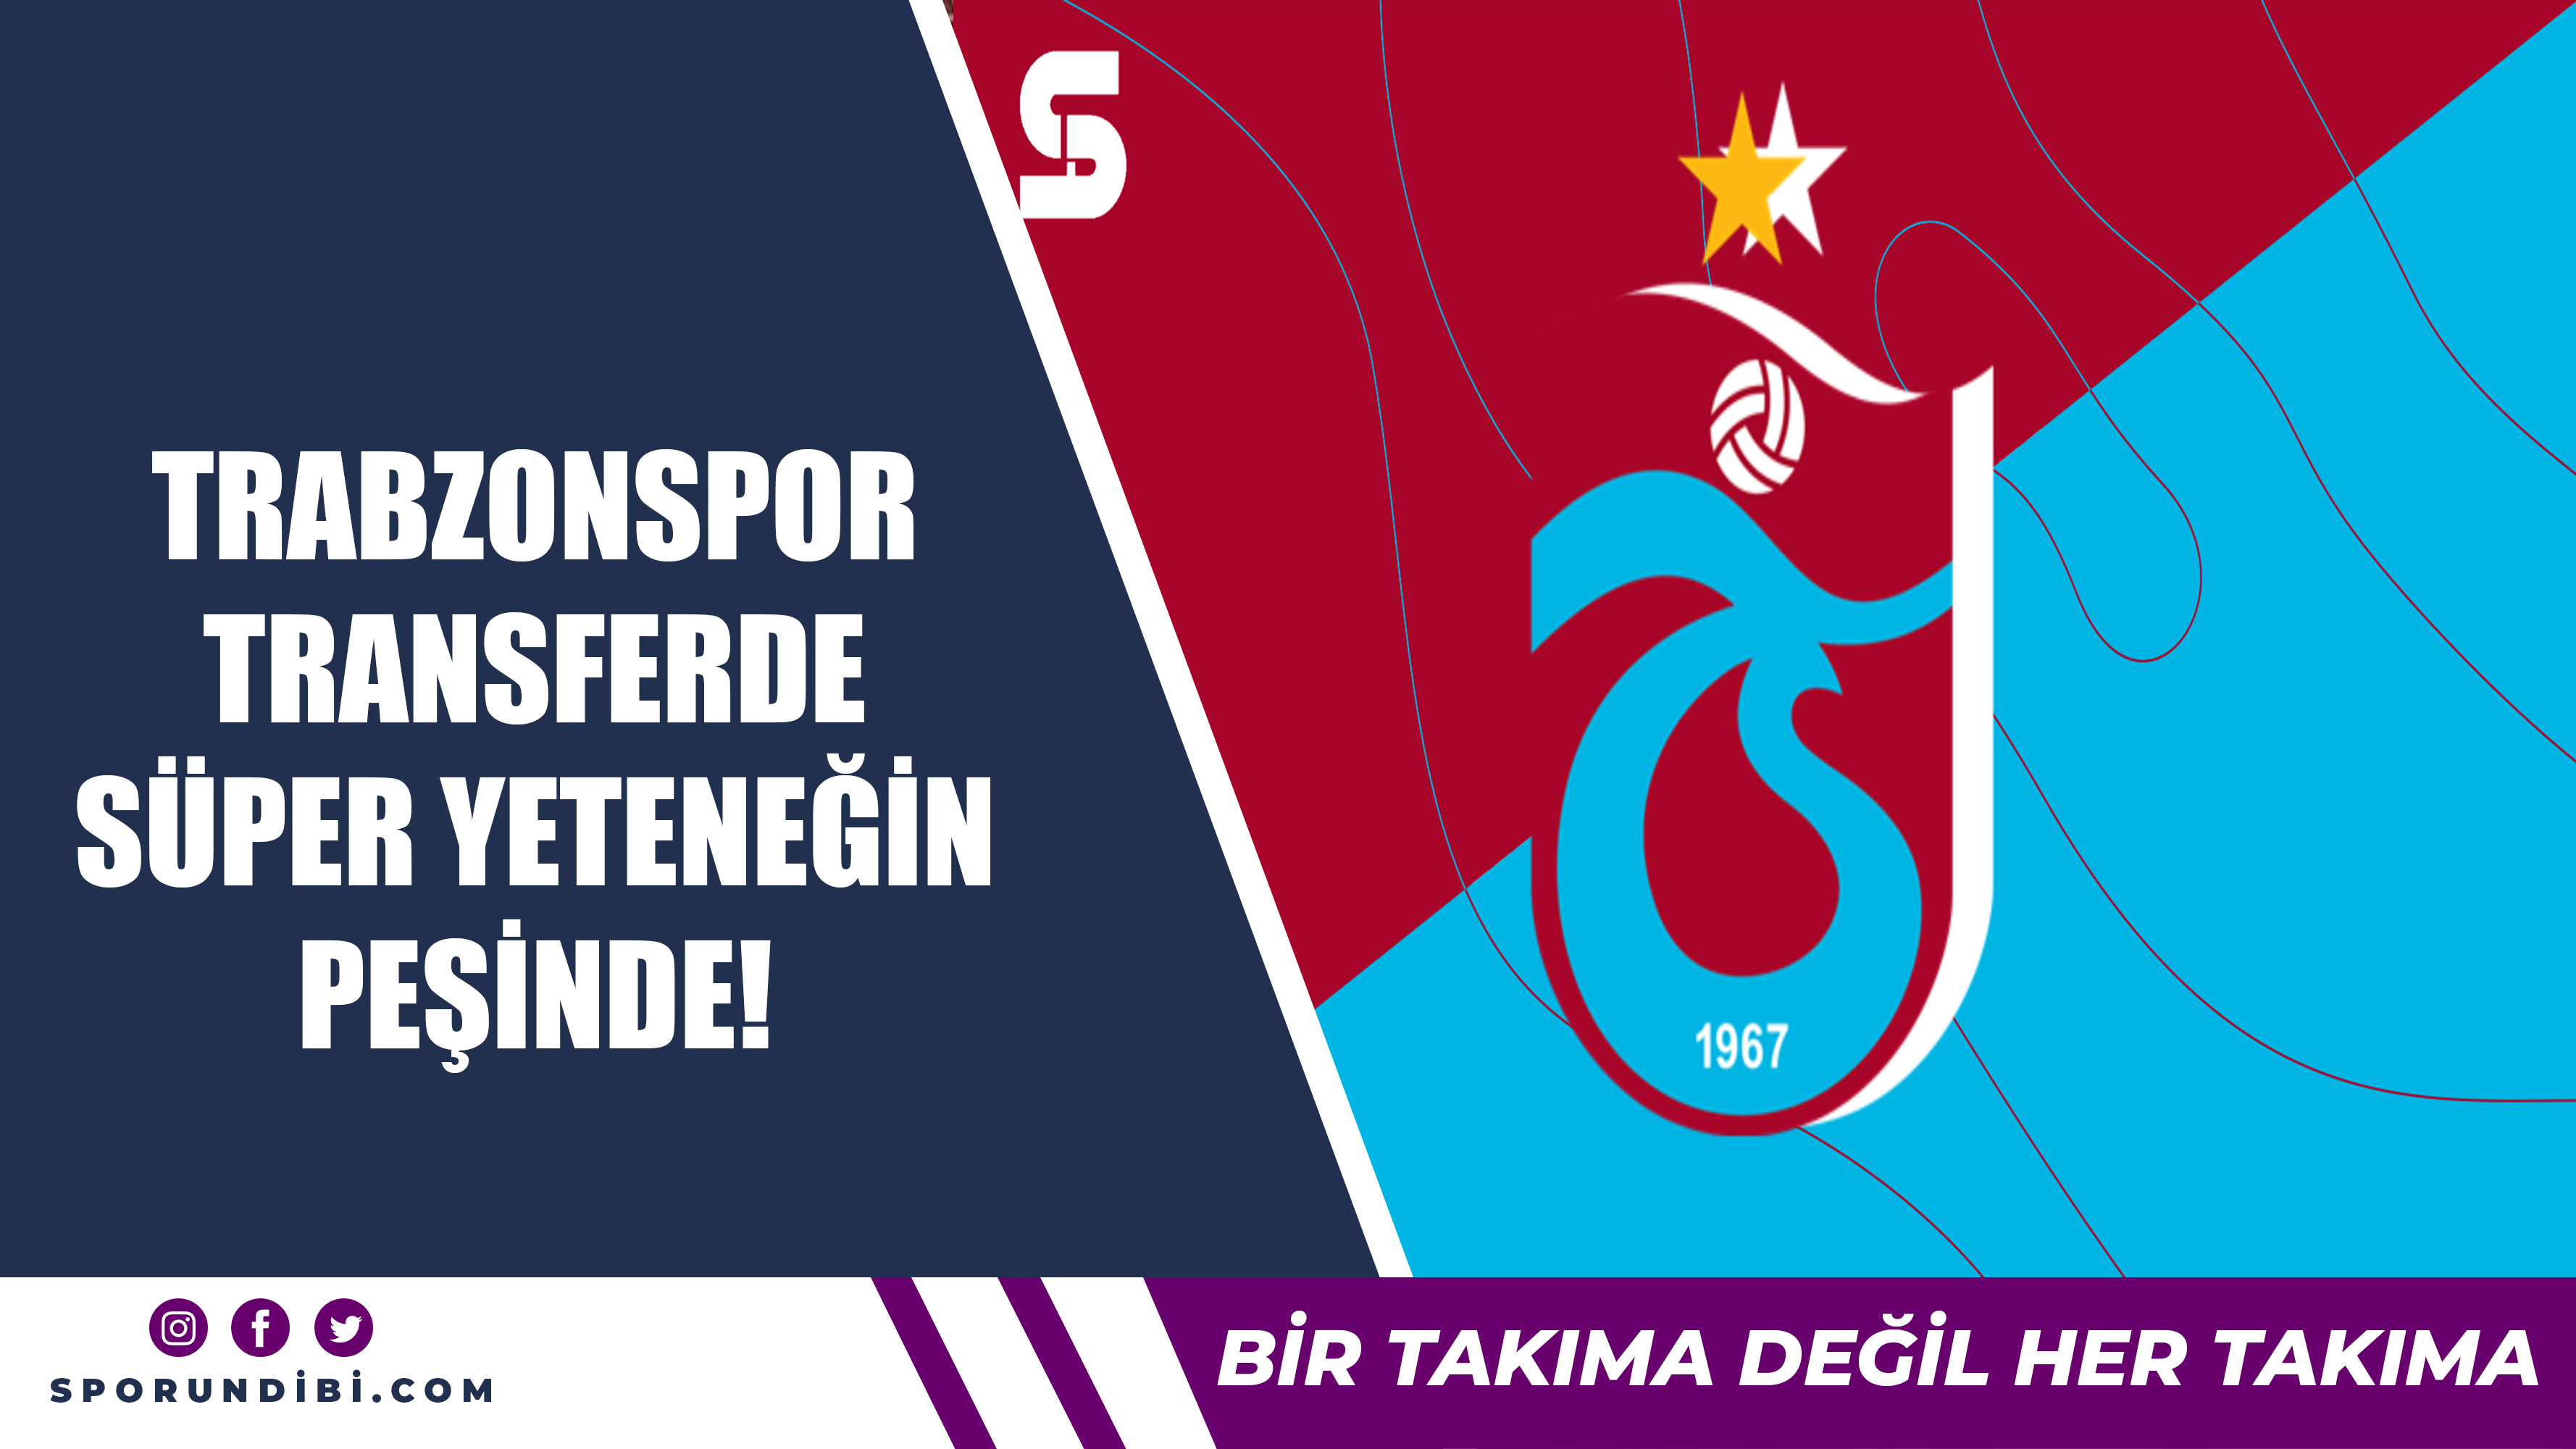 Trabzonspor transferde süper yeteneğin peşinde!